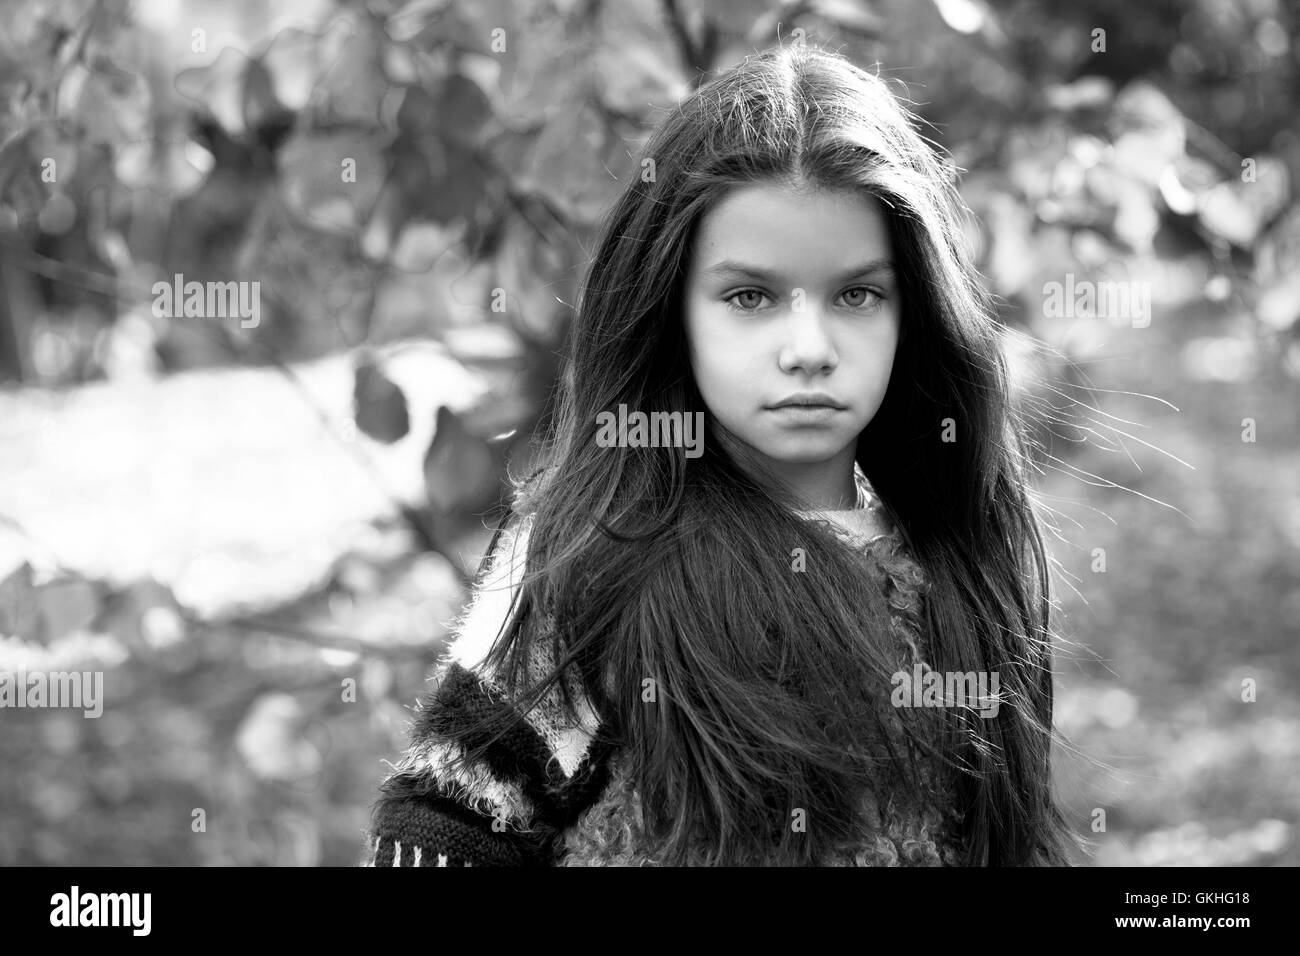 Porträt eines schönen neun Jahre alten Mädchens im Herbst Park hautnah Stockfoto